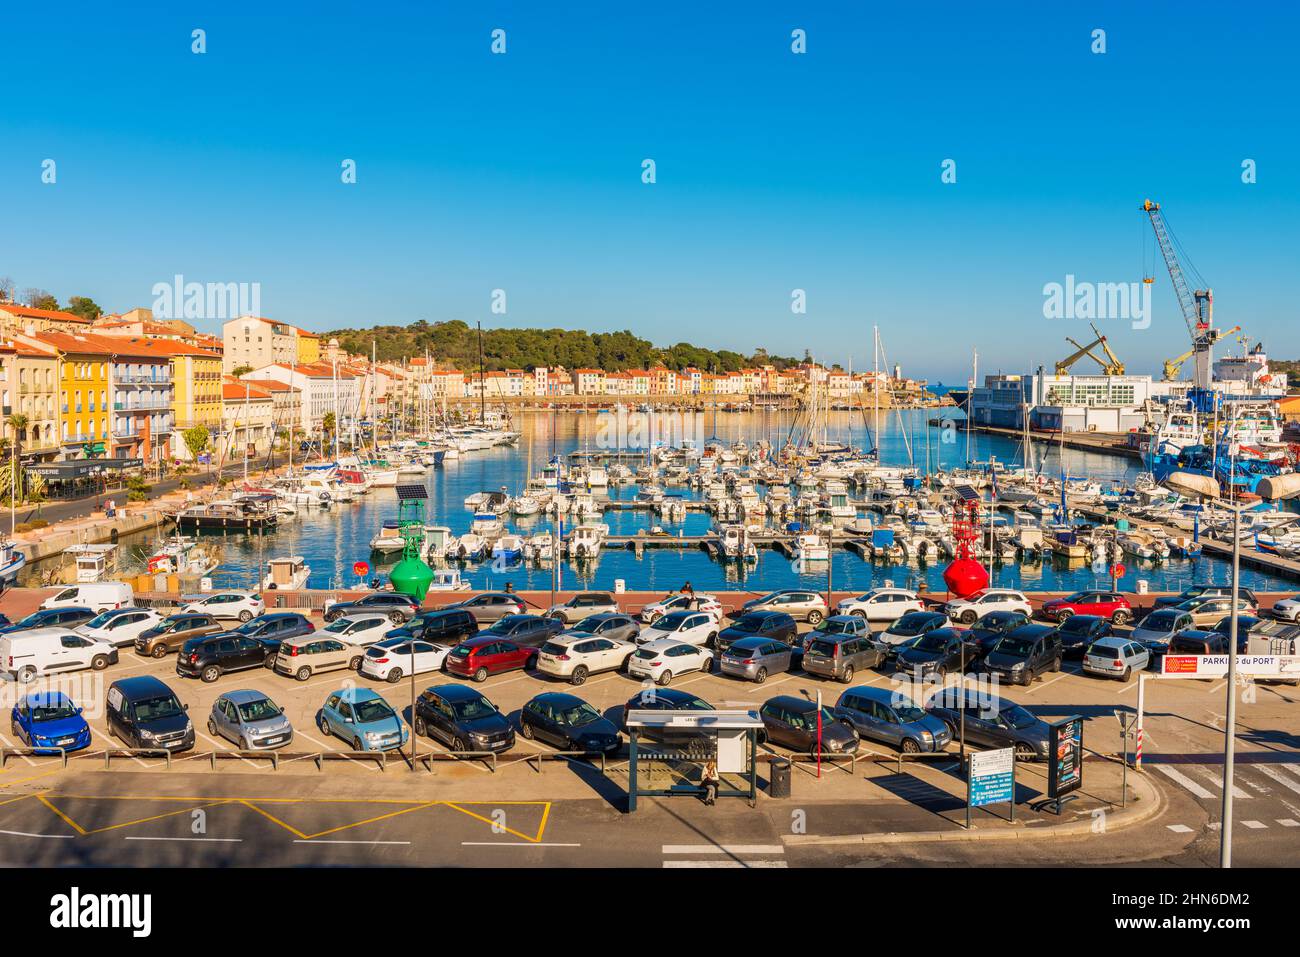 Vista ad angolo su Port-Vendres e il suo porto turistico e porto. Port-Vendres si trova vicino al confine spagnolo nel sud-ovest della Francia. Foto Stock